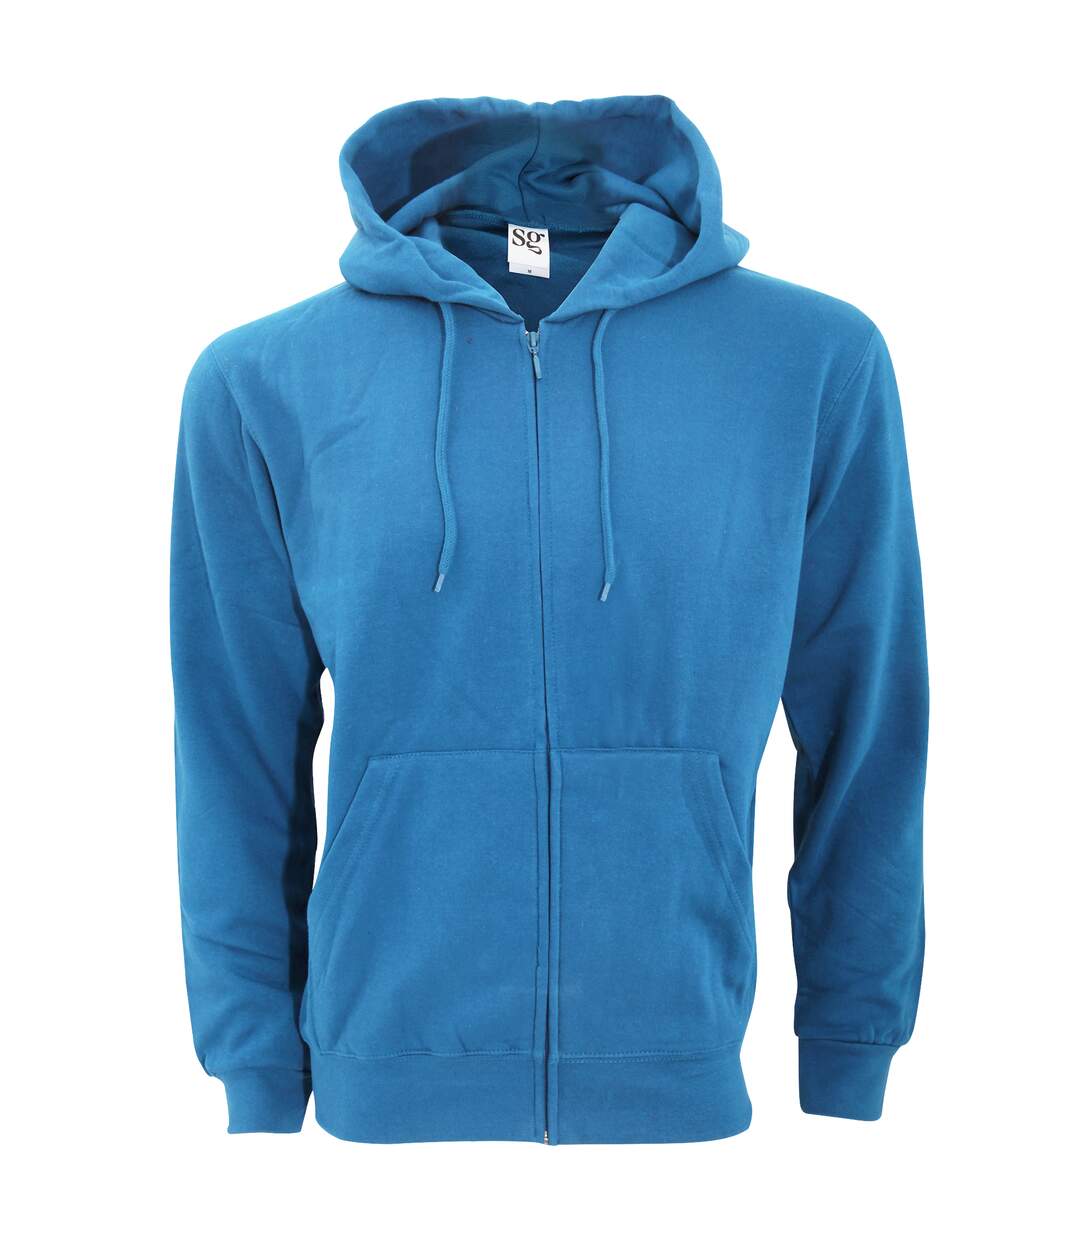 SG - Sweatshirt uni à capuche et fermeture zippée - Homme (Bleu royal) - UTBC1075